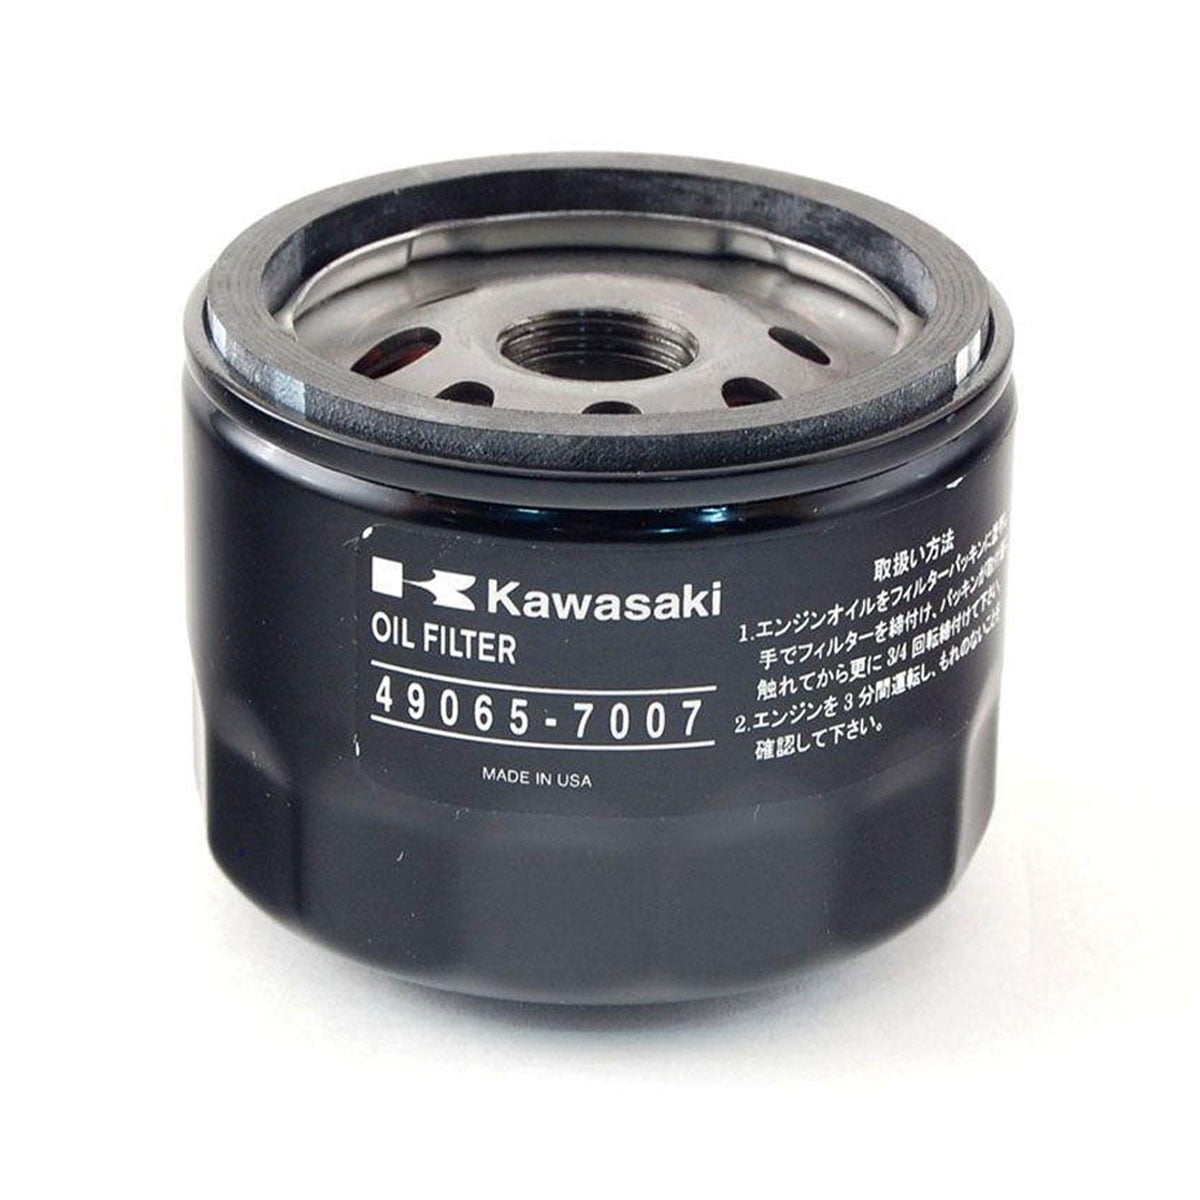 Ölfilter für Kawasaki, FR541V, FR600V, FR651V, FR691V, FR730V